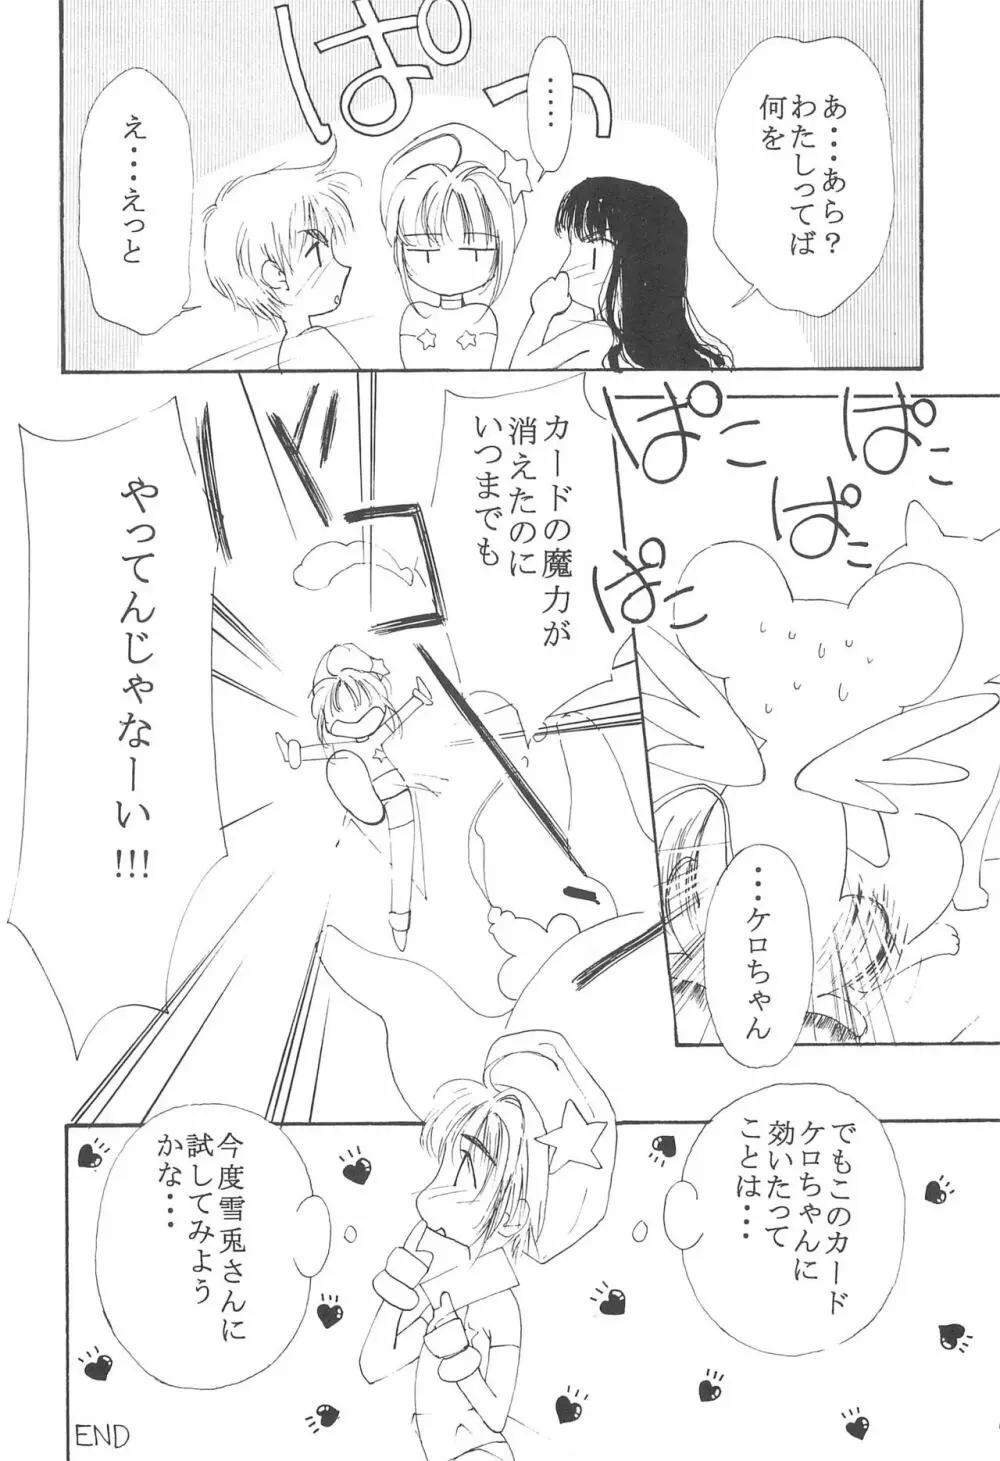 MoMo no Yu 8 20ページ